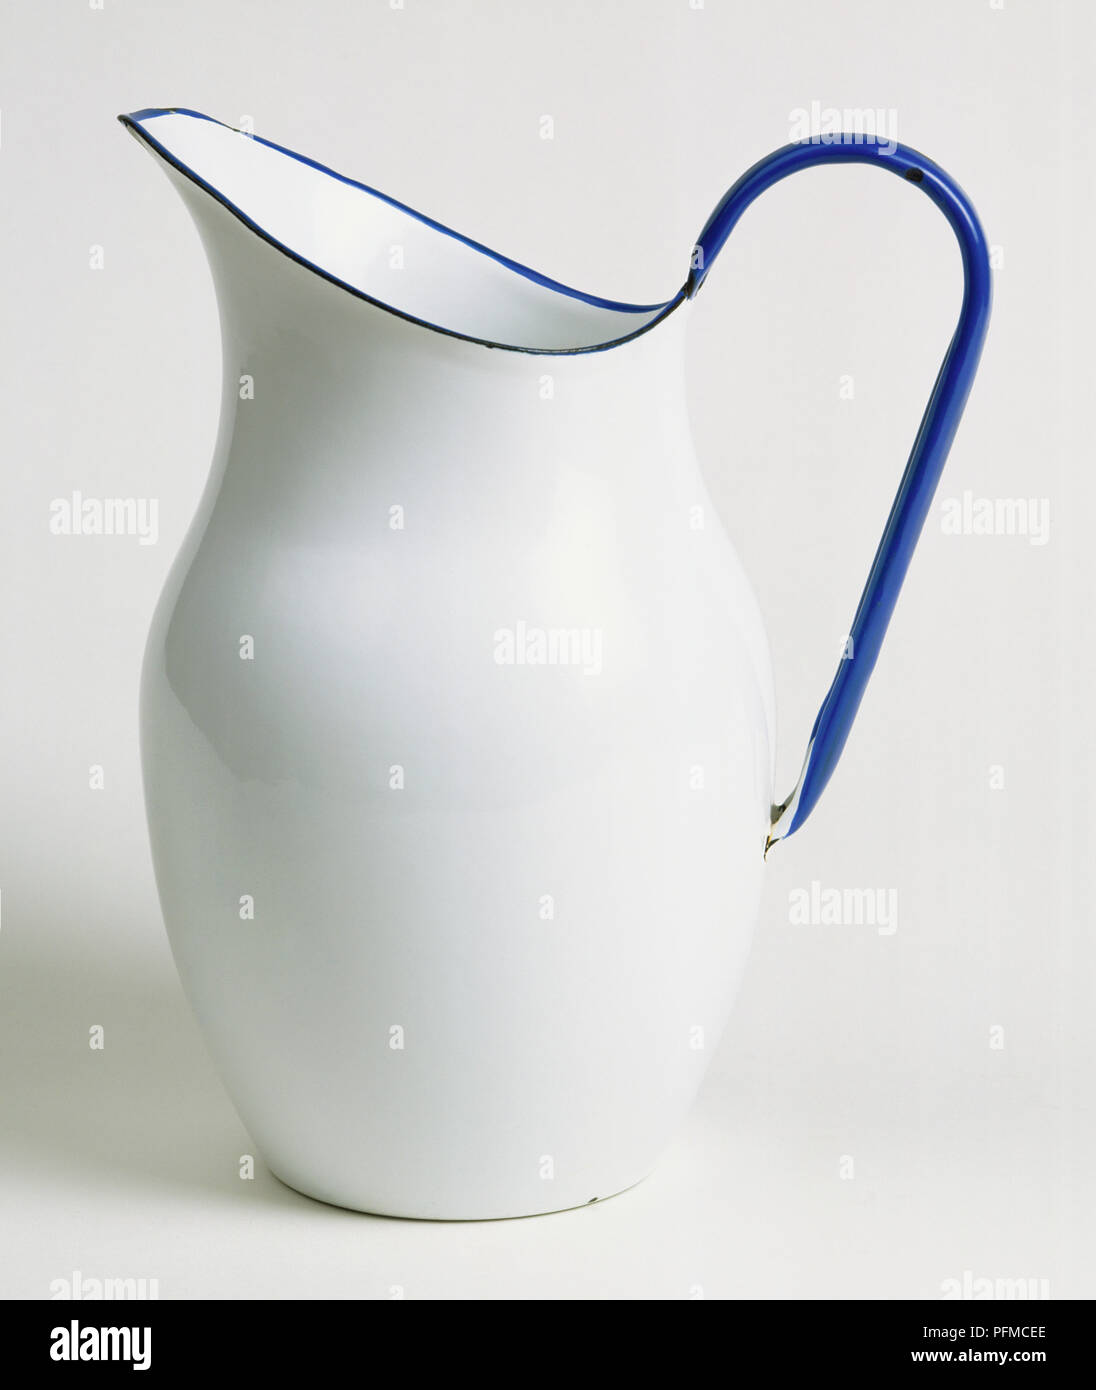 Smaltato brocca in metallo bianco con bordo blu e maniglia, vista laterale  Foto stock - Alamy